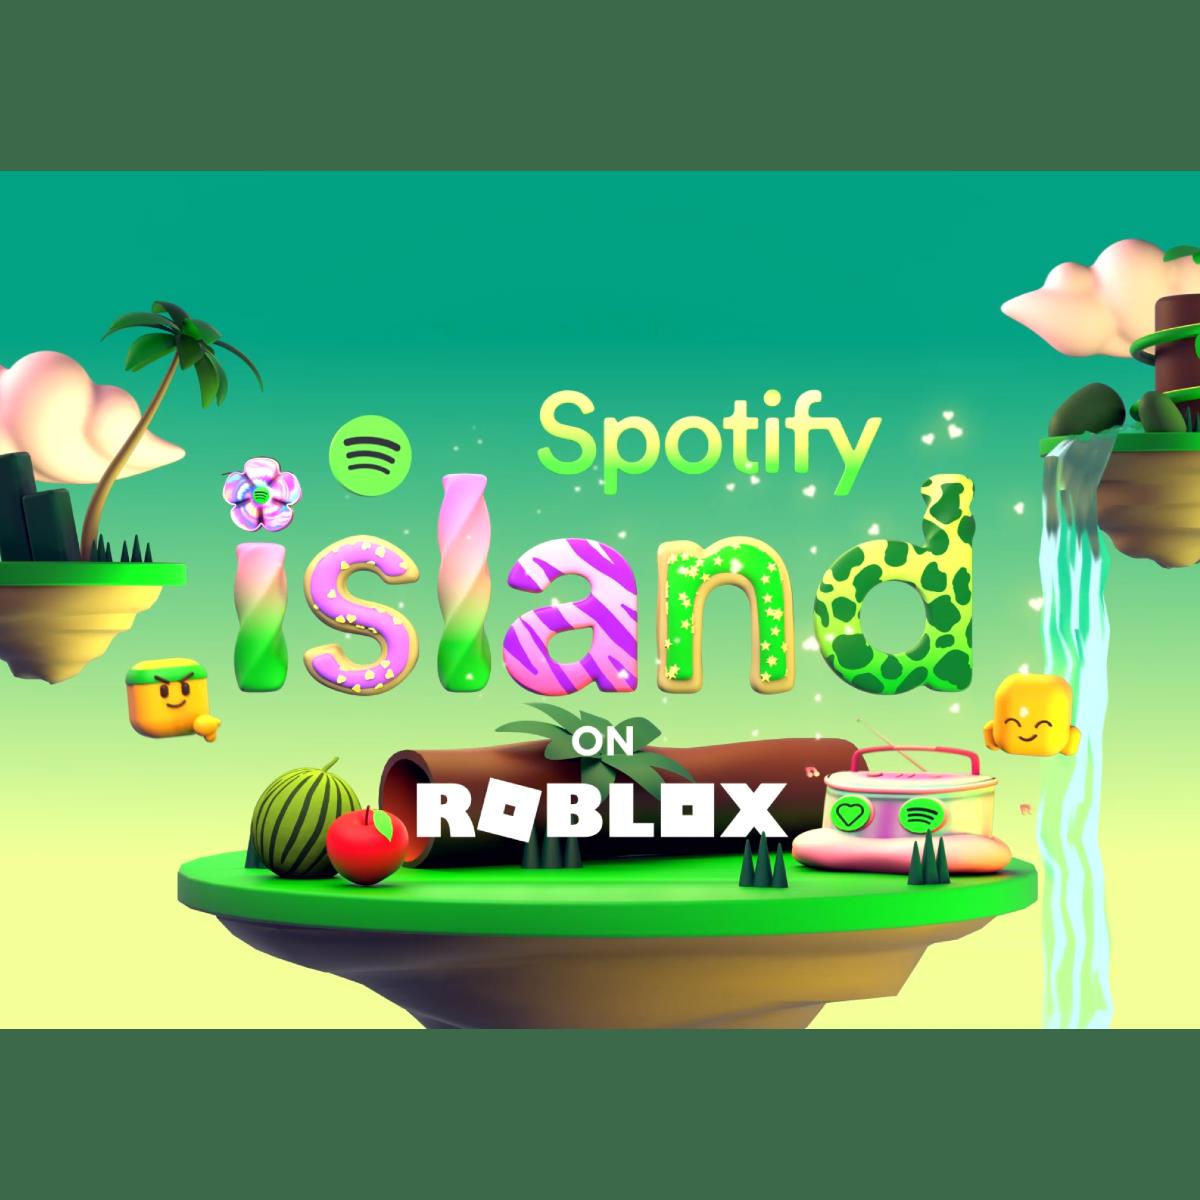 Spotify entra no metaverso com ilha no Roblox - BrasilNFT